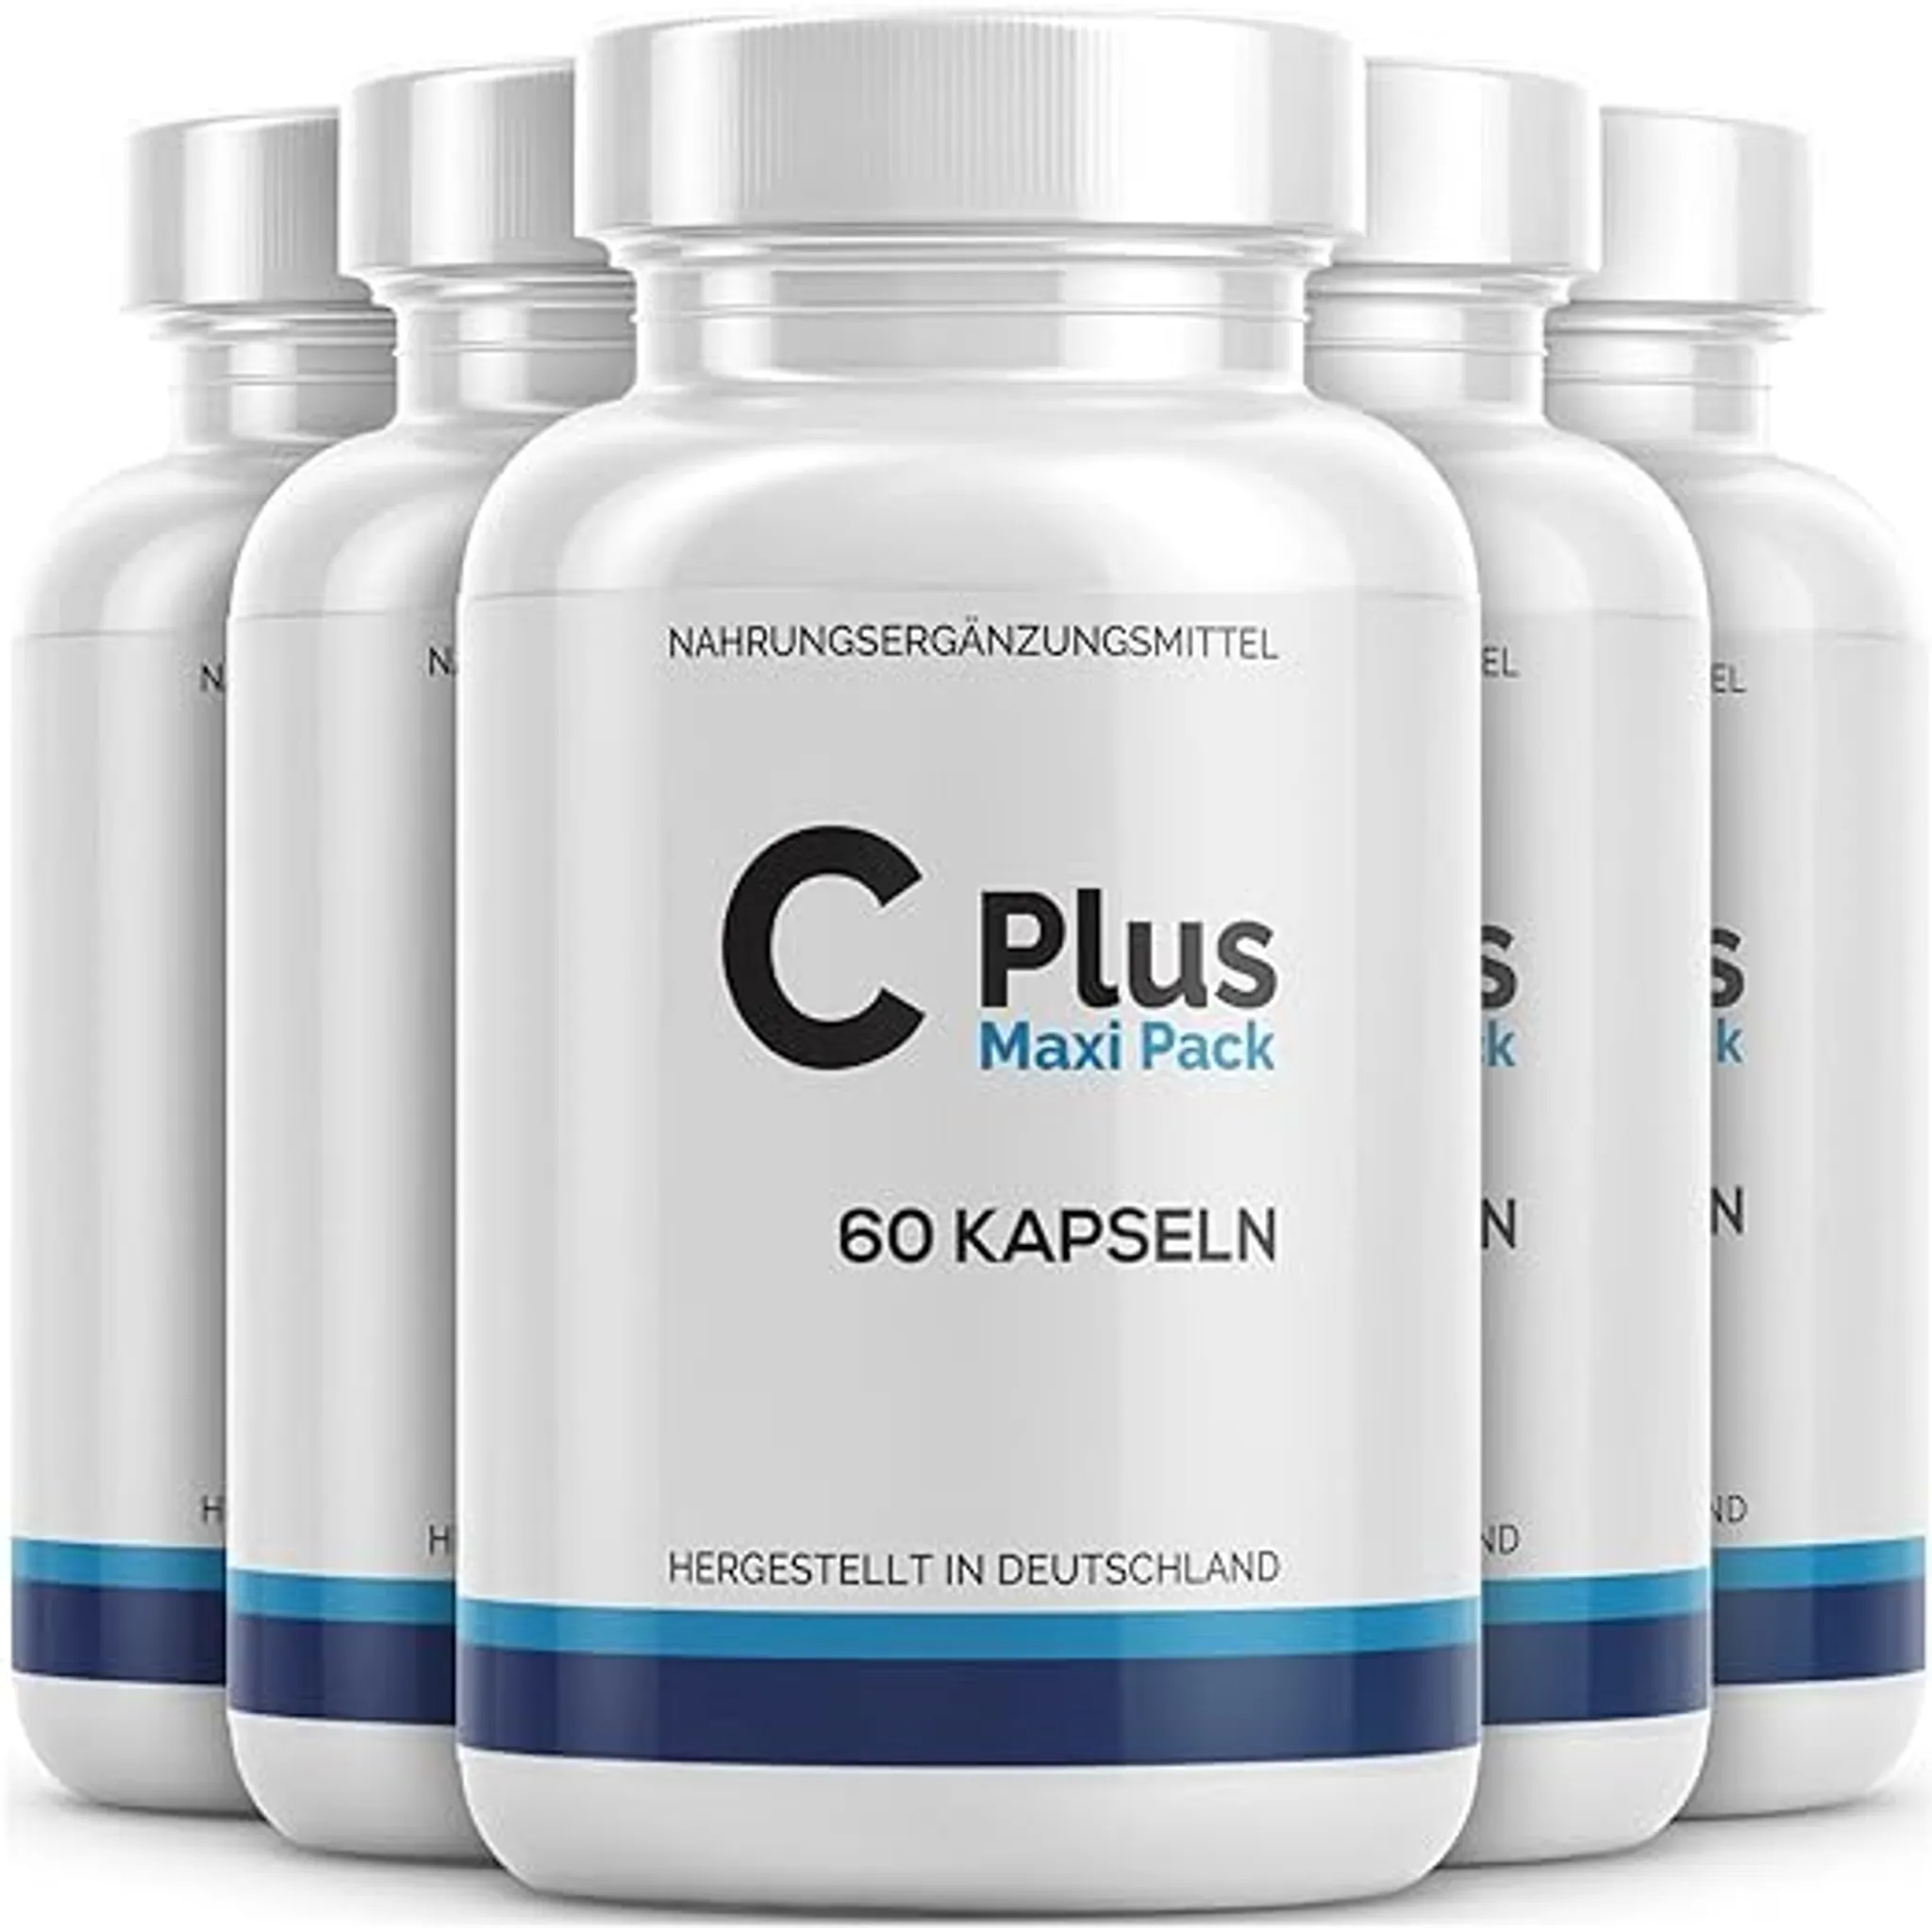 Cardirin Premium Drops - Cardirin Tropfen für Männer & Frauen - Maxi-Pack  mit 30 ml pro Flasche - 1x